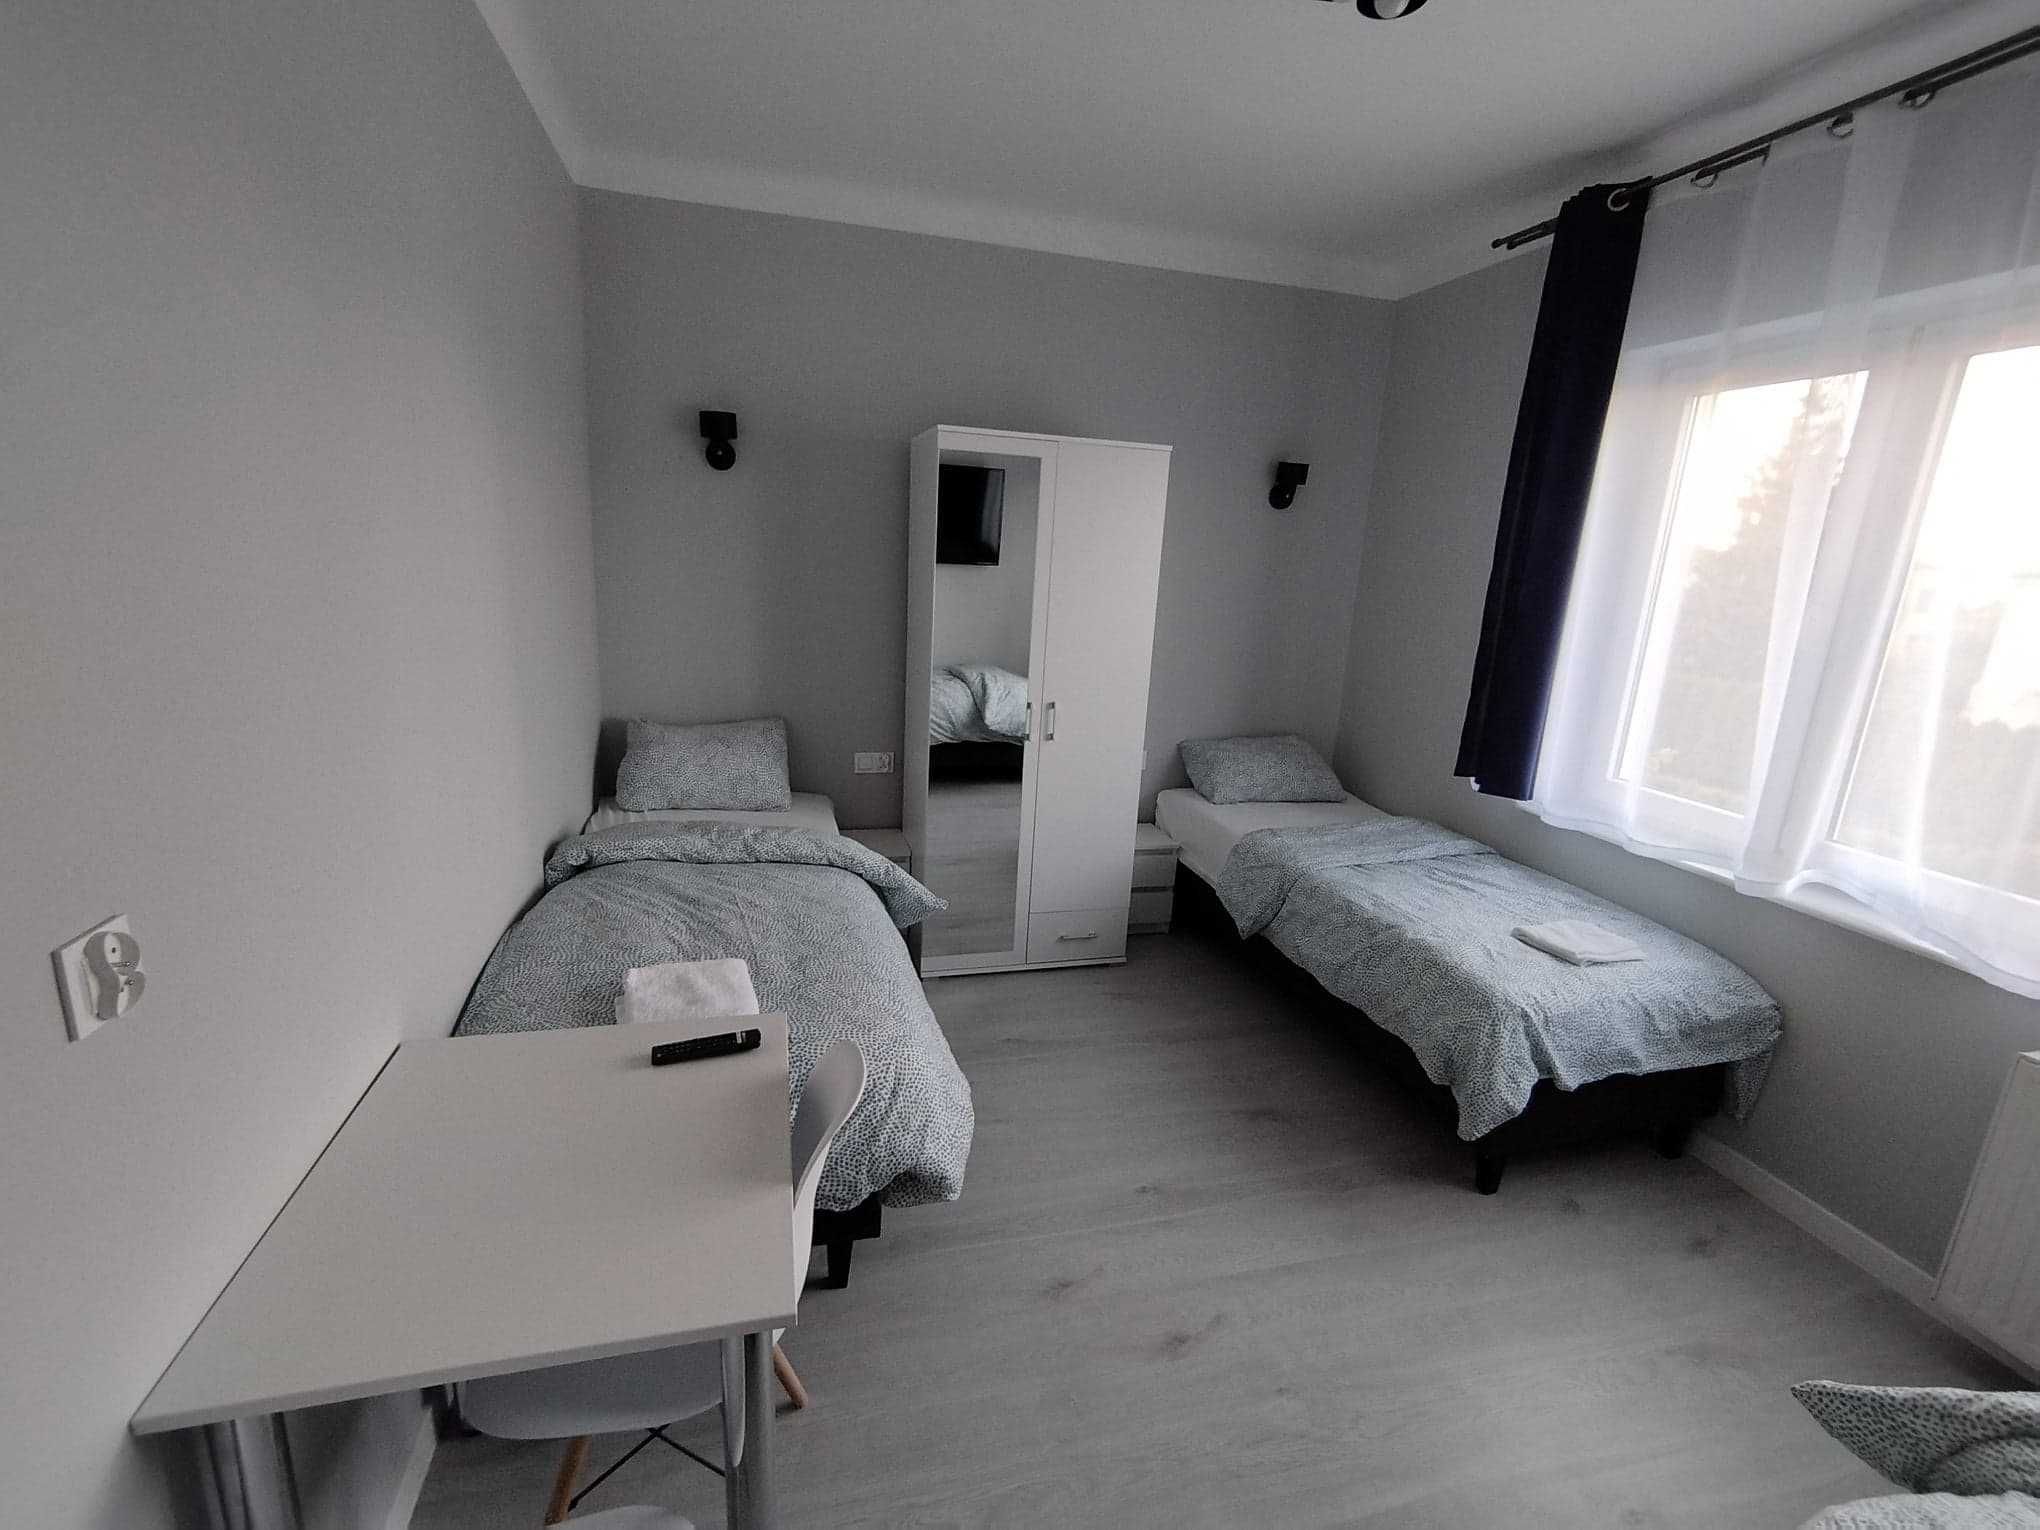 Pokoje gościnne noclegi hostel kwatery wifi smartv50" lodówka